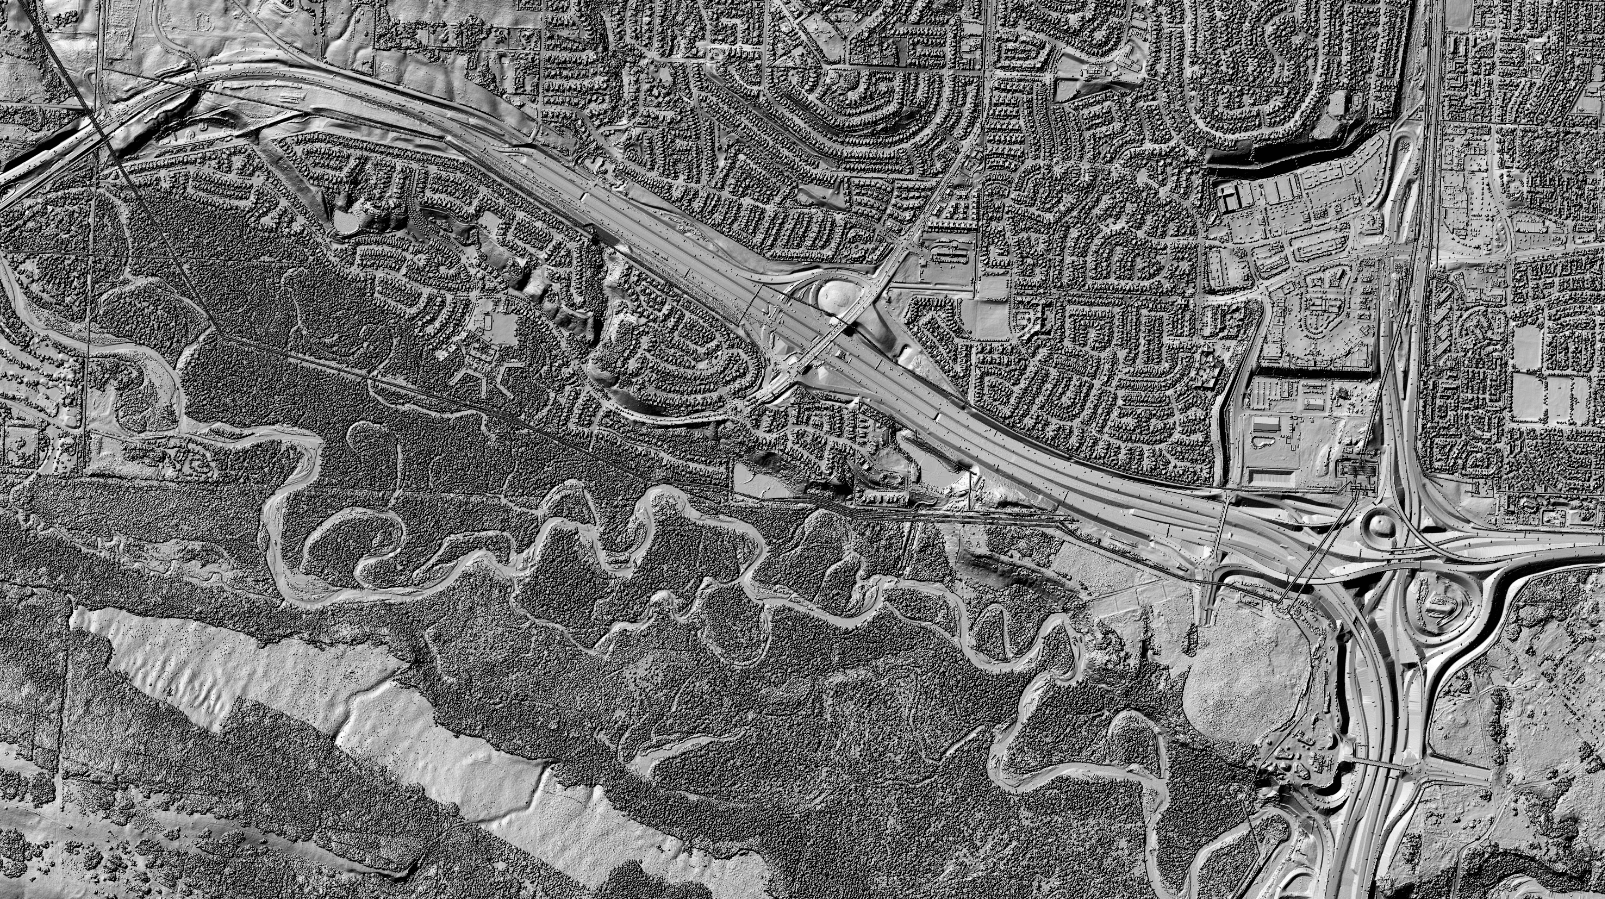  Reliefs 3D ombrés du Modèle numérique de surface (Image du haut) et du Modèle numérique de terrain (Image du bas) couvrant un secteur de la ville de Calgary, AB.